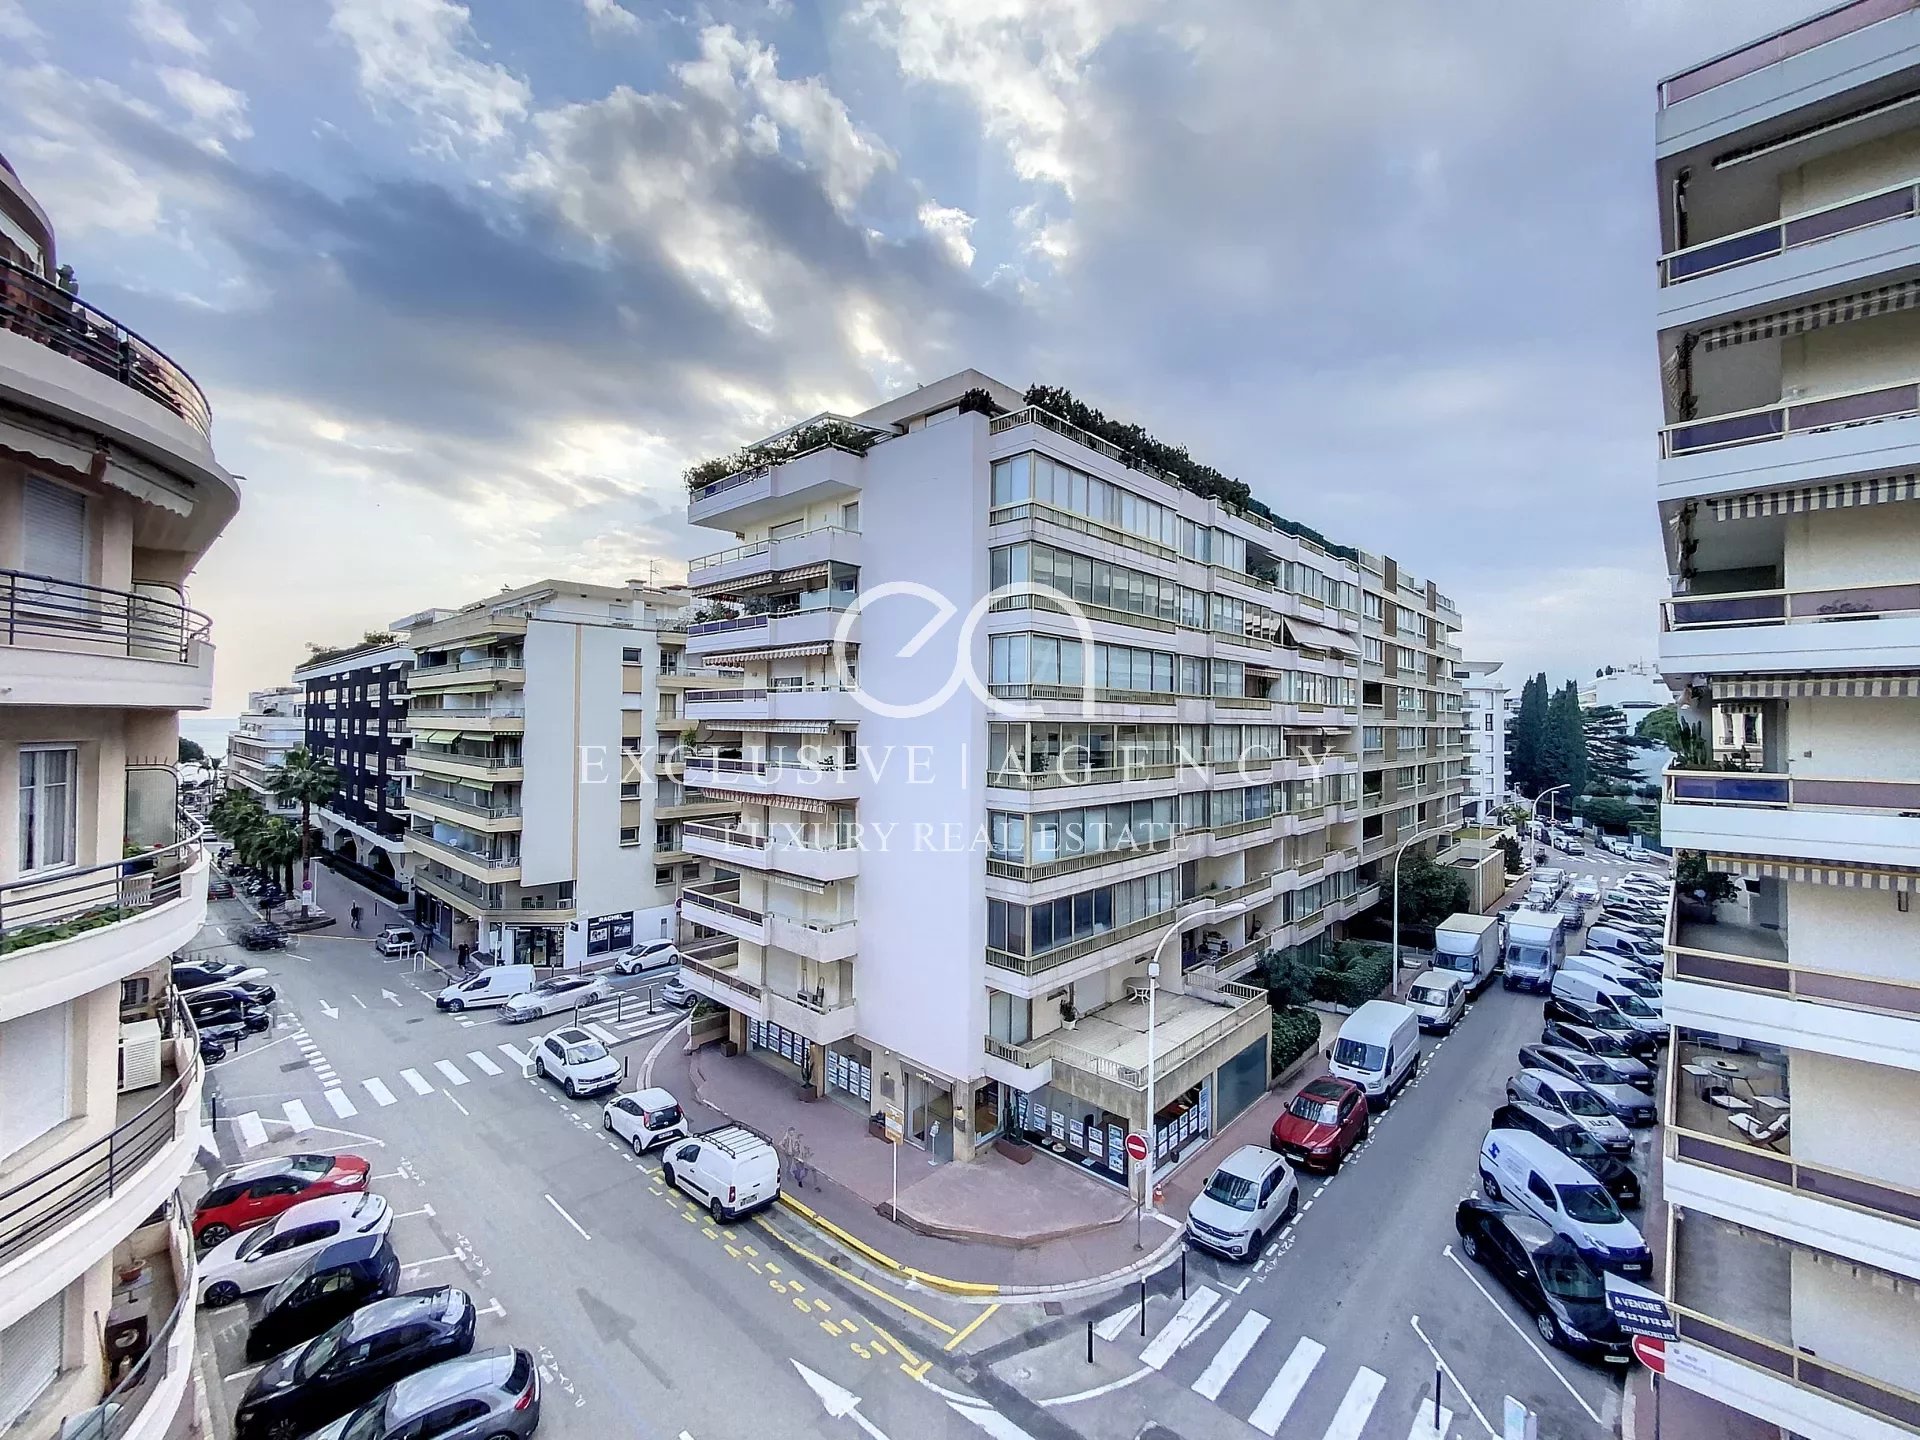 Verhuur in het centrum van Cannes, gemeubileerd 3-kamer appartement, 85m², op 200m van de Croisette